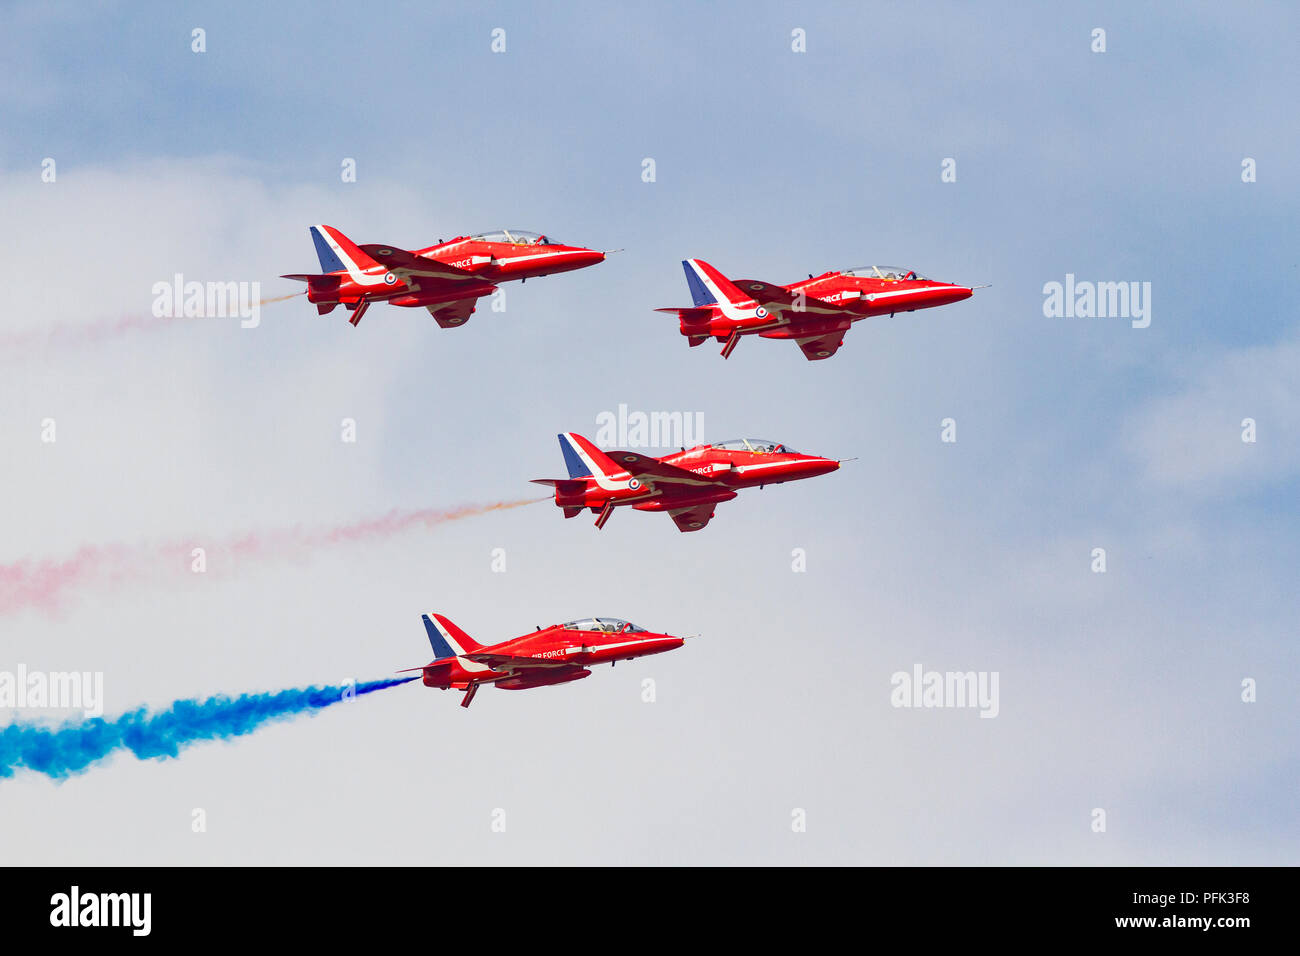 Les flèches rouges de la Royal Air Force l'affichage de la scène de l'équipe de voltige aérienne à Blackpool Banque D'Images